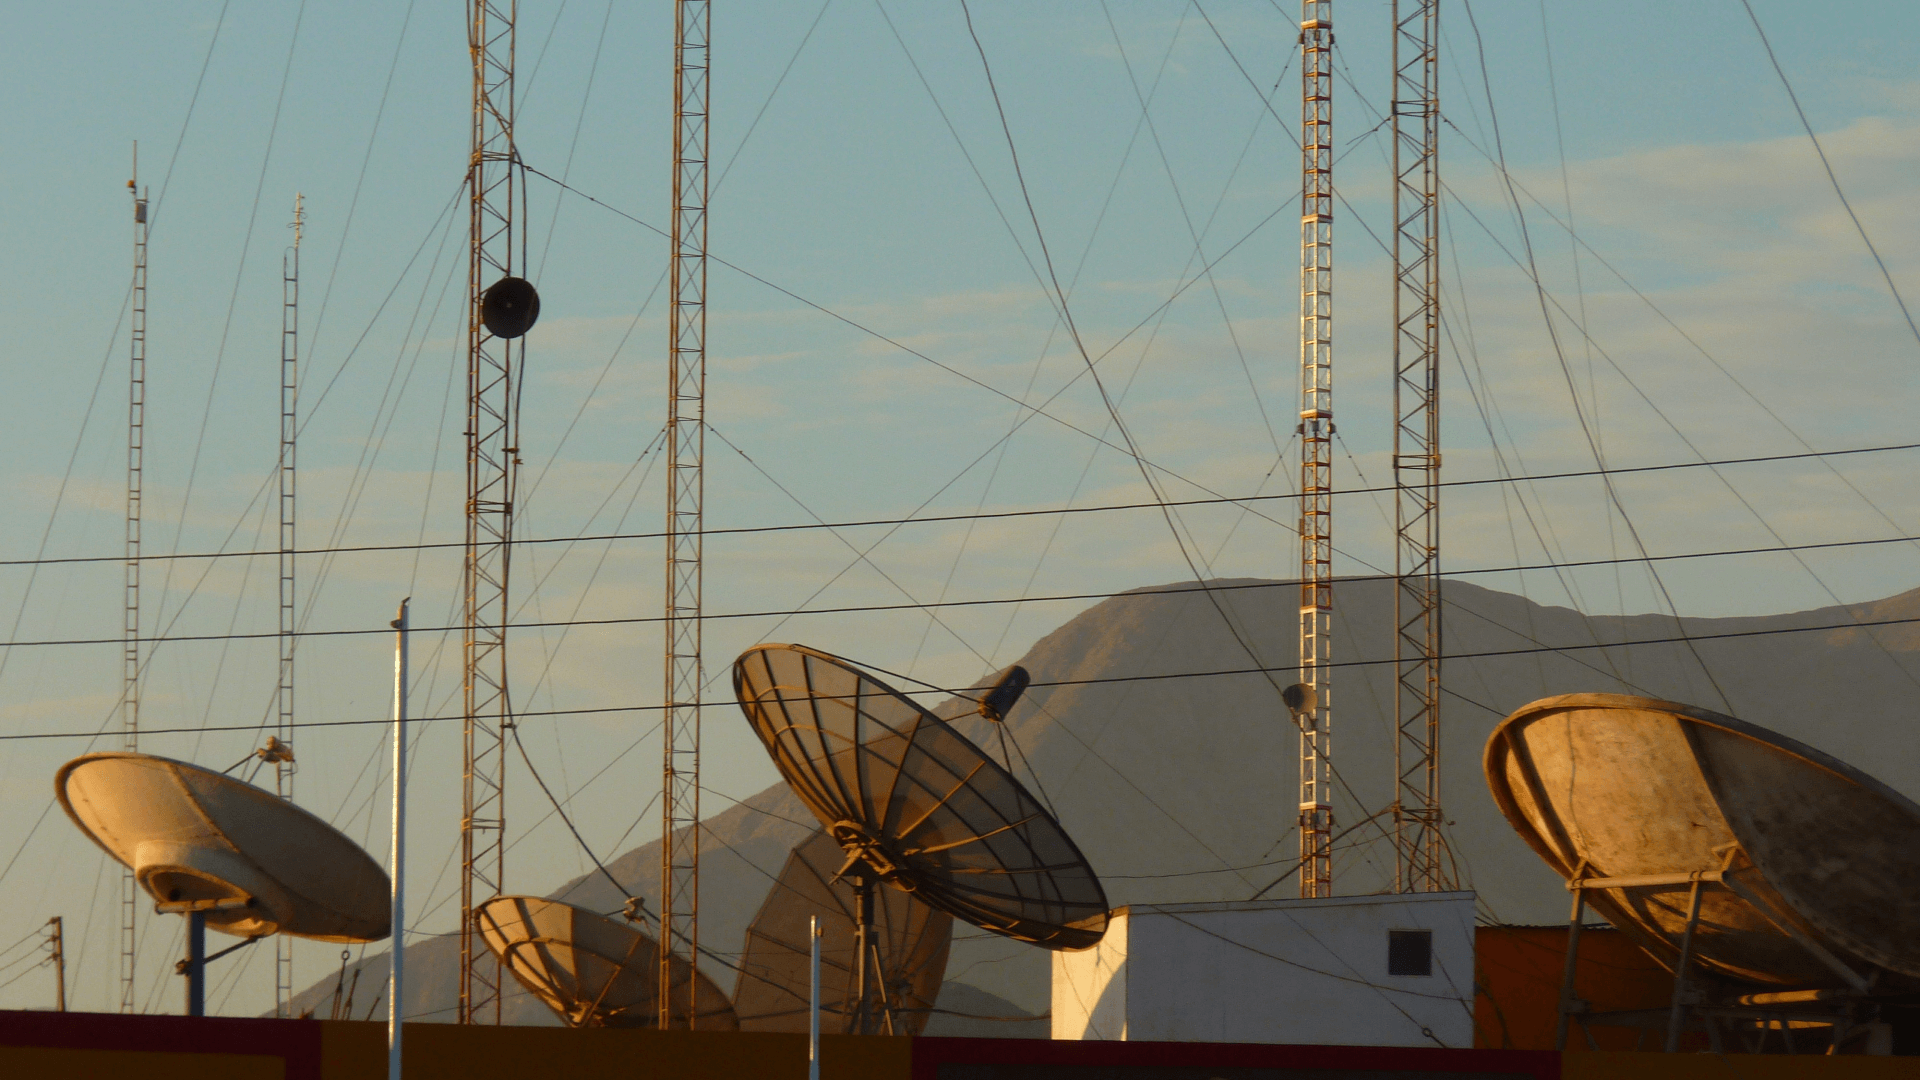 OLX Астана - сервис объявлений в Казахстане - установка спутниковых антенн